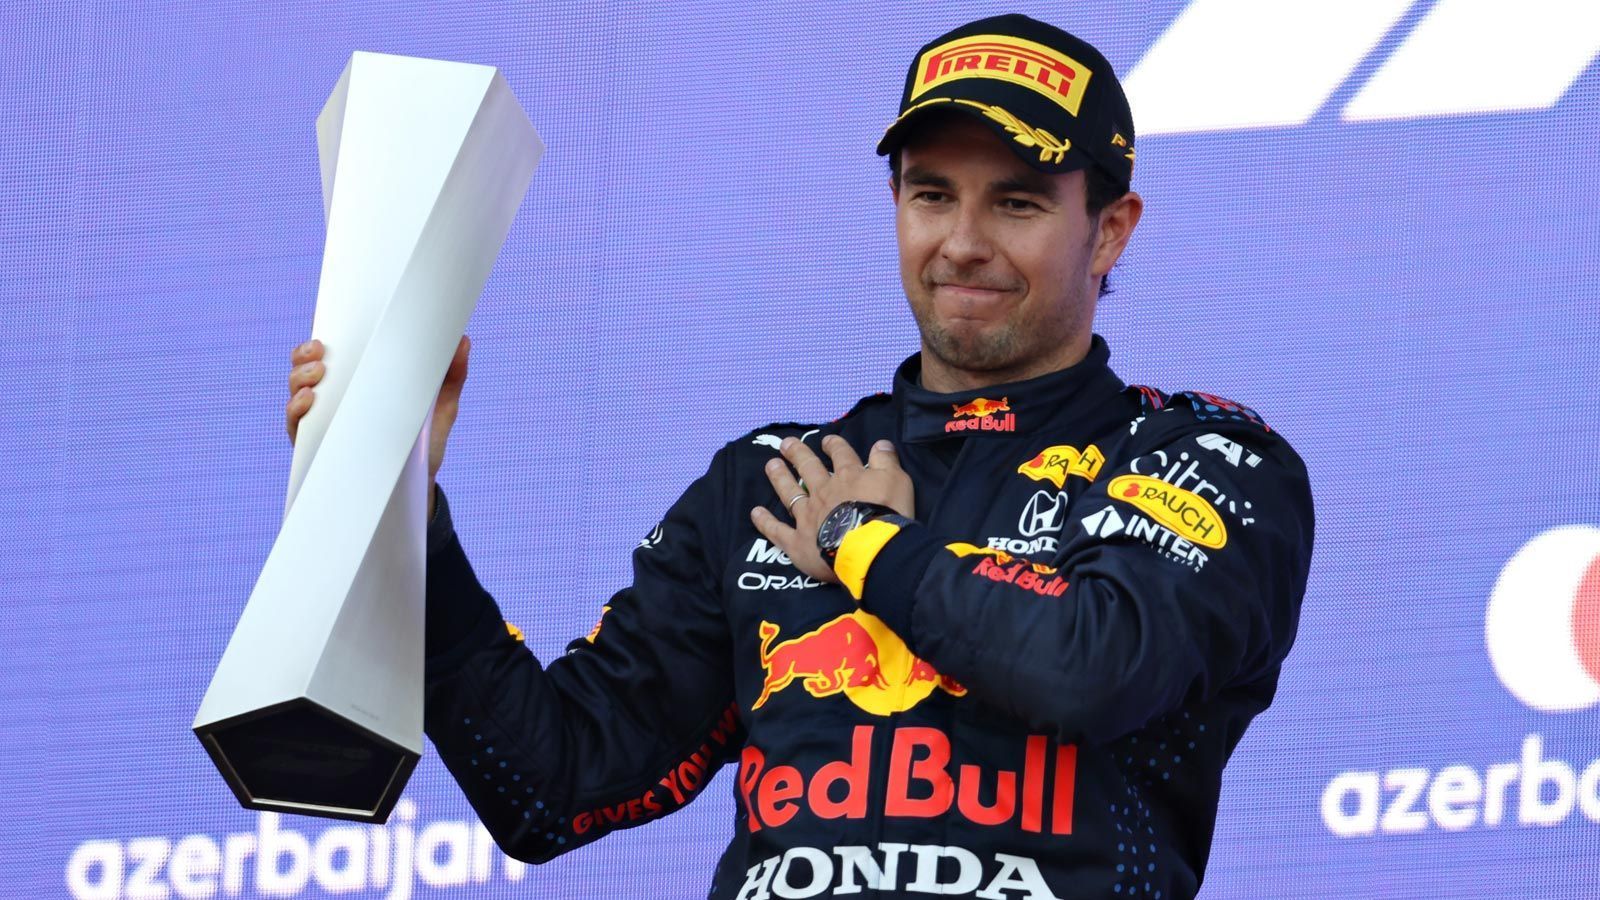 
                <strong>Sergio Perez (Red Bull)</strong><br>
                Saison 2021: 190 Punkte, 4. Platz der GesamtwertungFünf Rennen hatte sich der Mexikaner gegeben. Dann wollte er sein neues Auto verstanden haben und um Siege mitfahren. So lautete eine Aussage von Sergio Perez vor der Saison. Und tatsächlich: Nach einem ordentlichen Saisonstart konnte er das sechste Rennen dieses Jahres - in Baku - gewinnen, profitierte aber auch davon, dass Max Verstappen ausfiel und Lewis Hamilton nach einer Rennunterbrechung den Restart verpatzte. Für Perez war es mit fünf Podiumsplätzen und 190 Punkten die erfolgreichste Saison seiner Karriere.
              